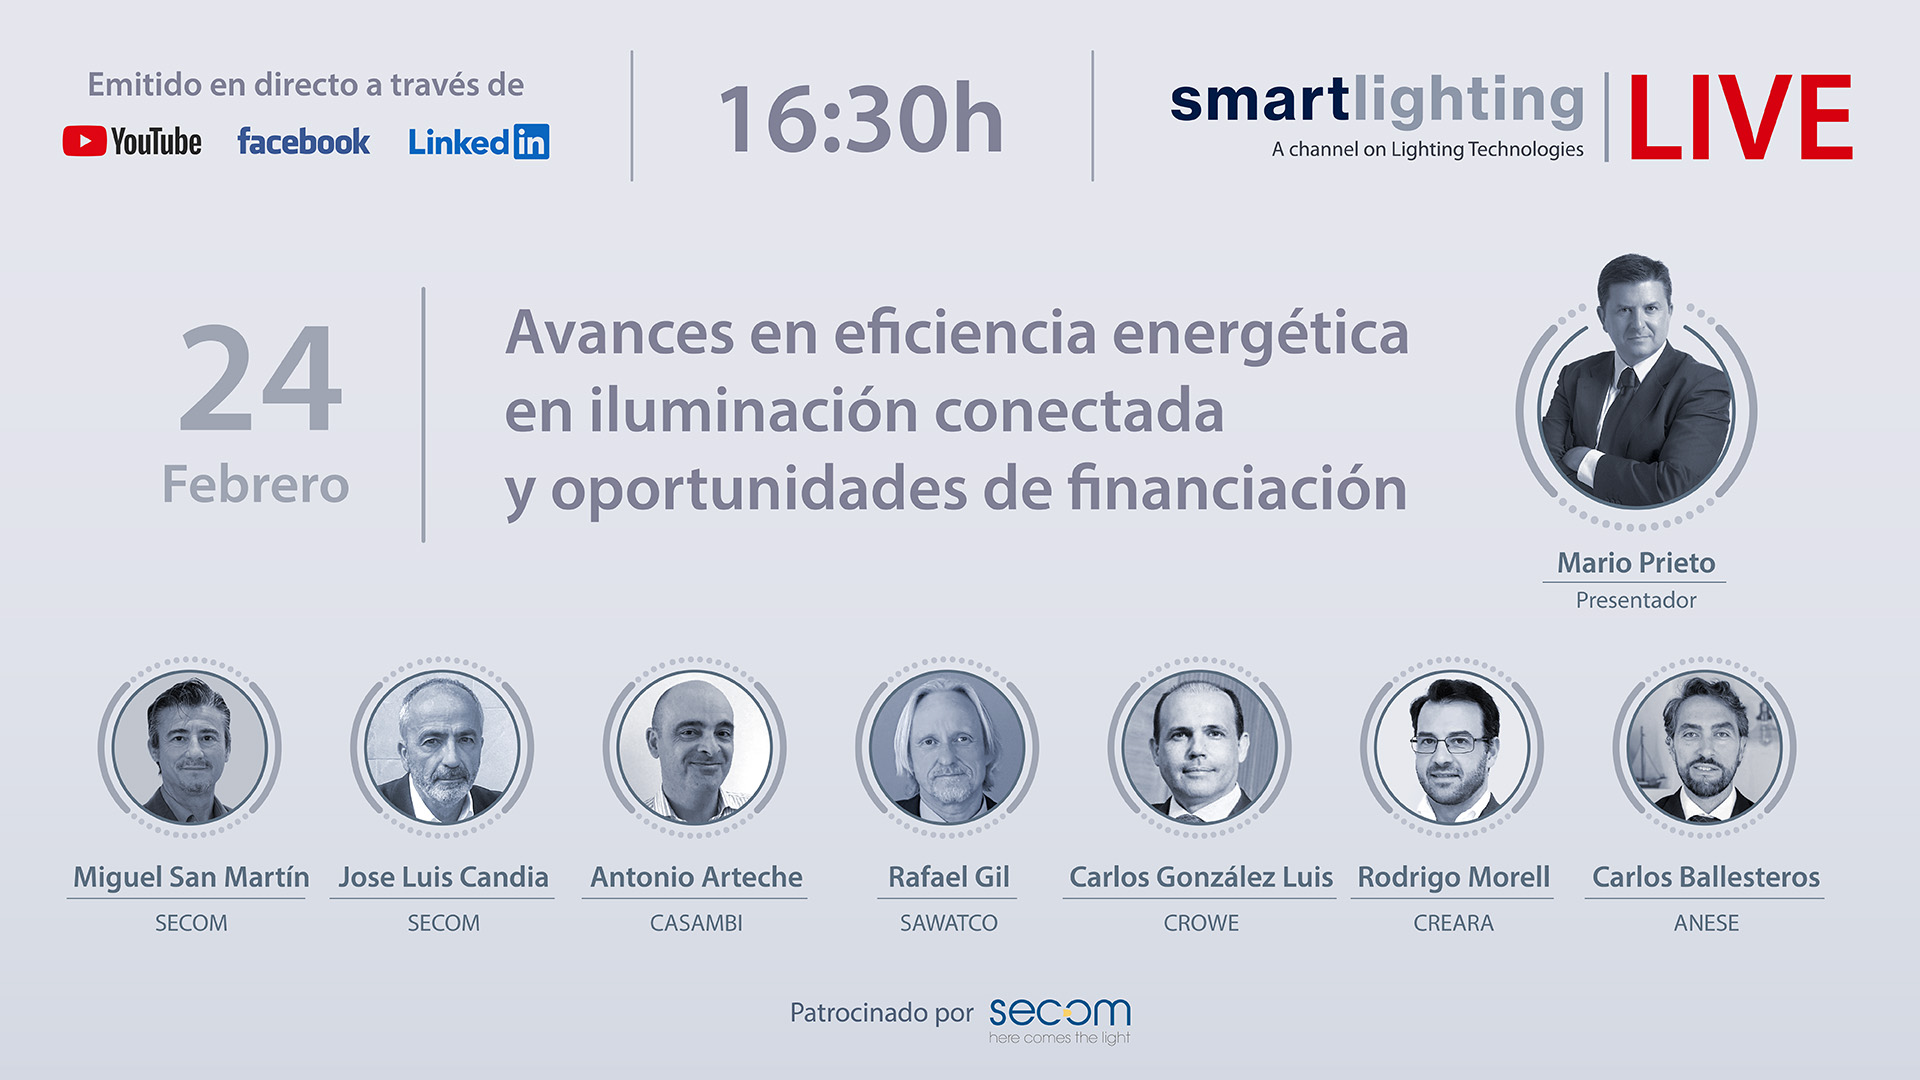 smartlighting LIVE presenta: “Avances en eficiencia energética en iluminación conectada y oportunidades de financiación”